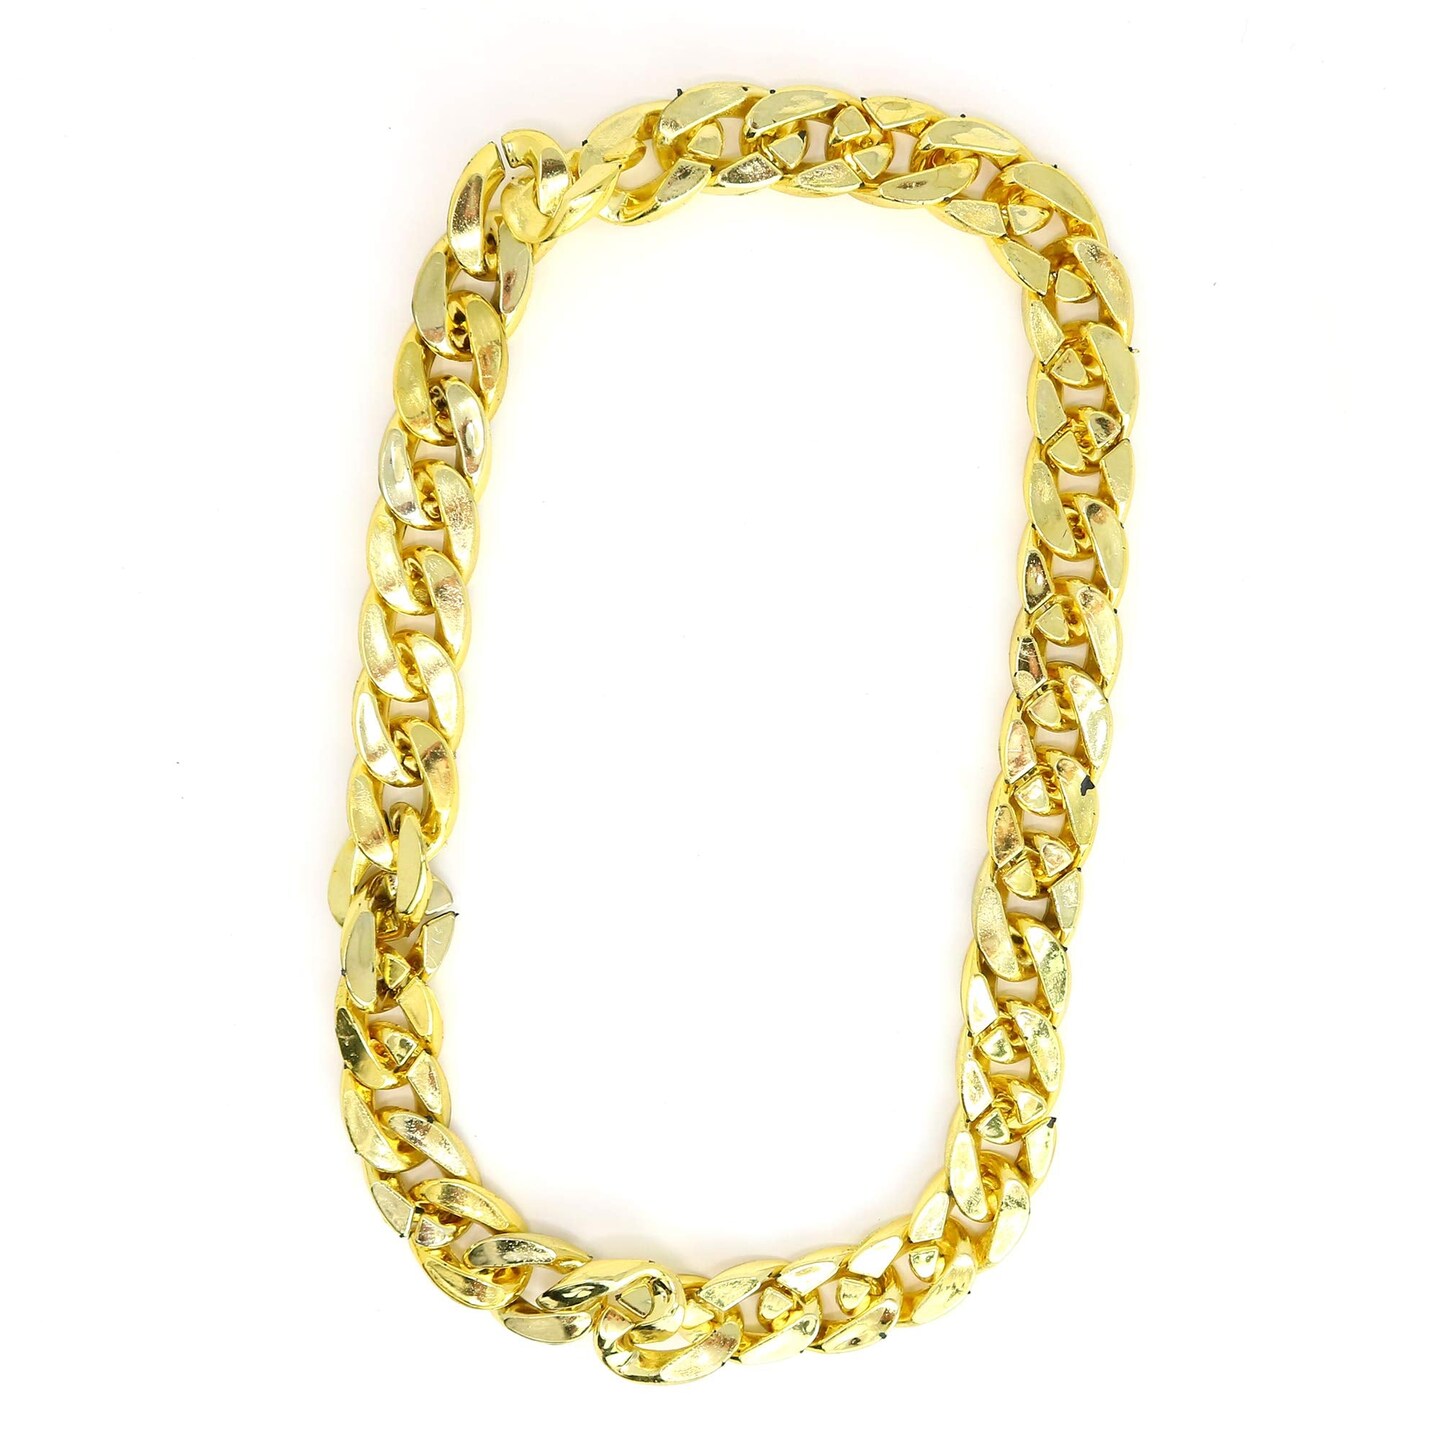 Disc-embellished Shoulder Bag - Gold-colored/silver-colored